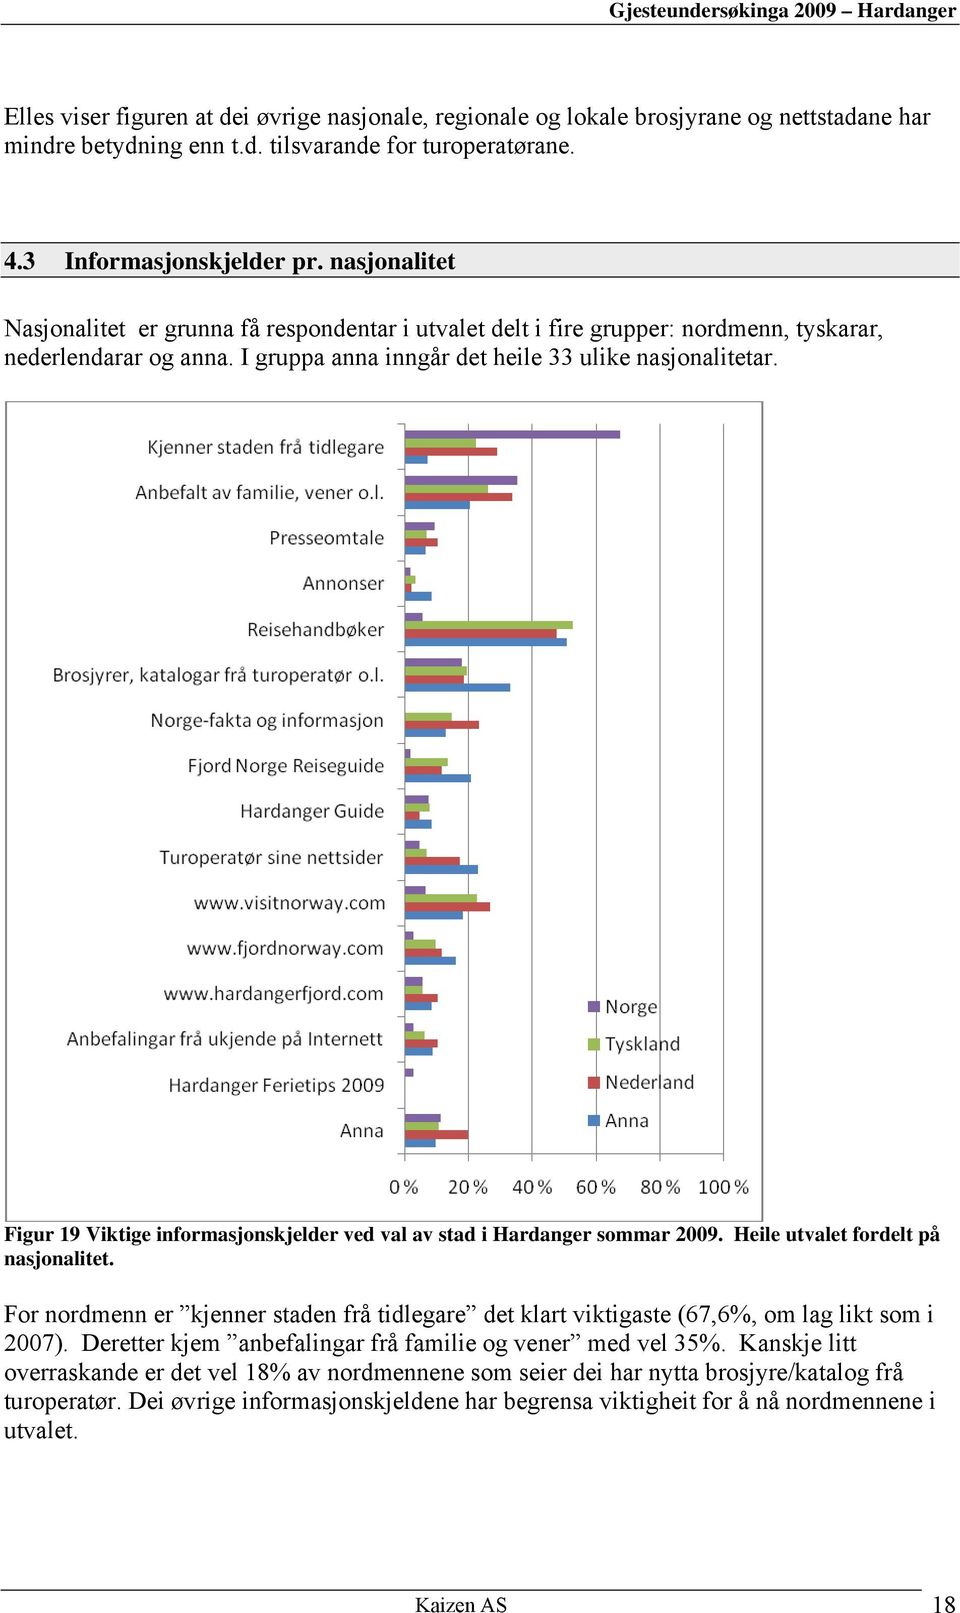 Figur 19 Viktige informasjonskjelder ved val av stad i Hardanger sommar 2009. Heile utvalet fordelt på nasjonalitet.